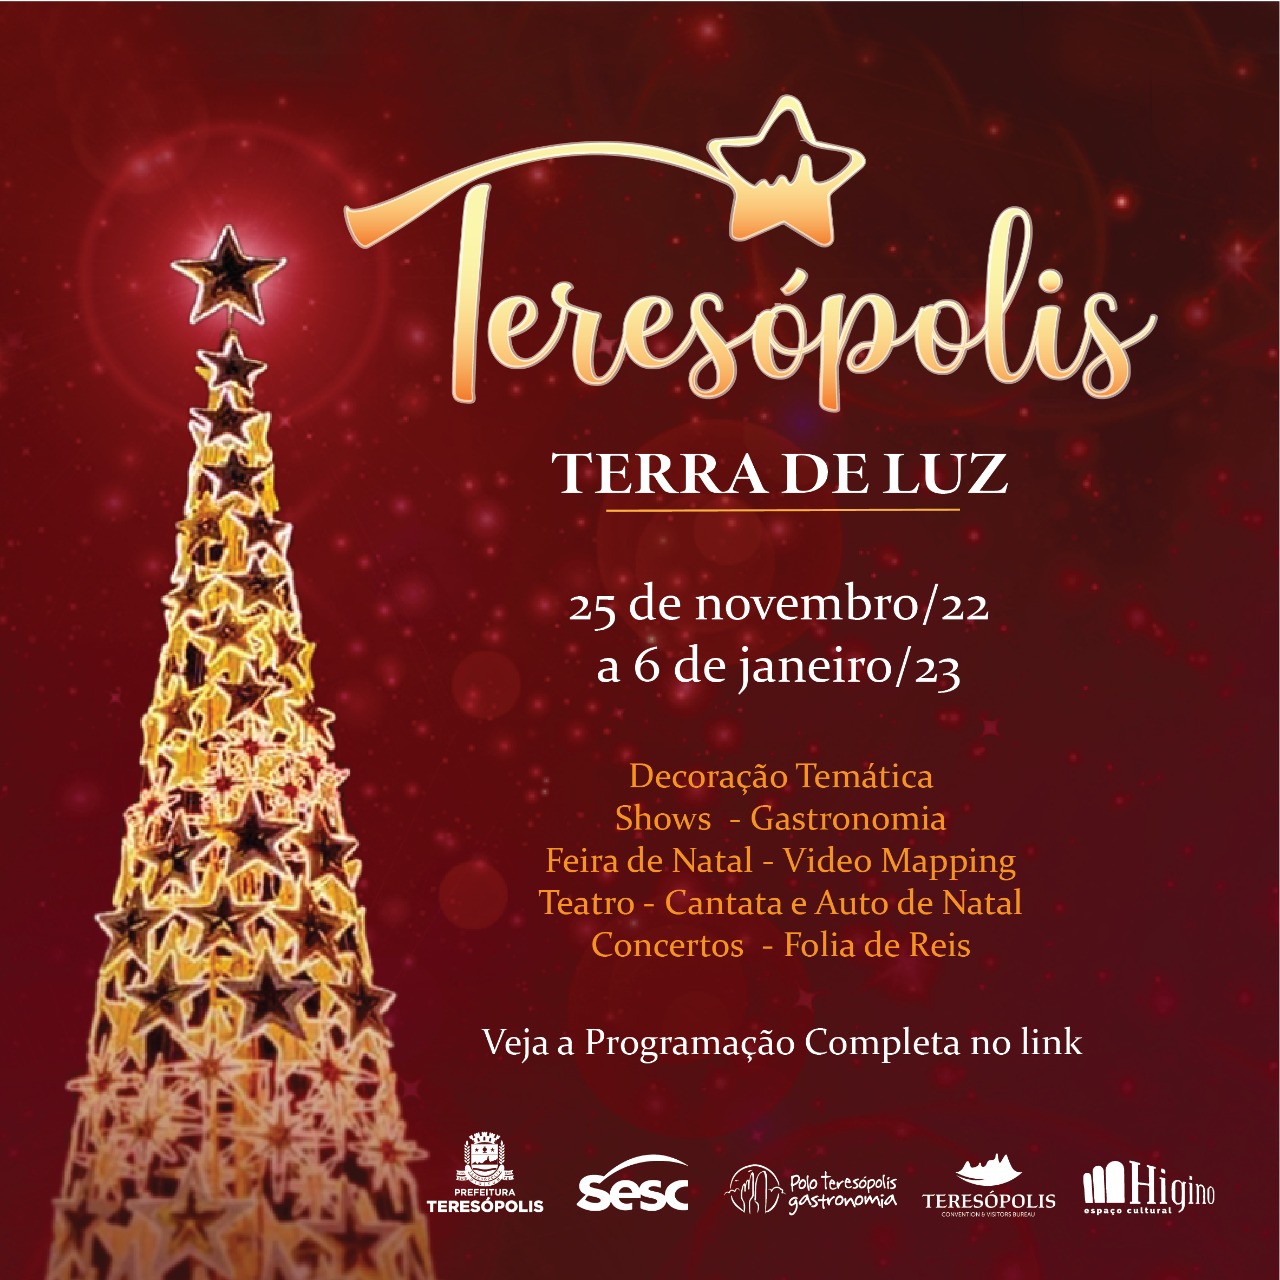 You are currently viewing Teresópolis Terra de Luz 2022: Programação tem Caravana Coca-Cola neste sábado, 03/12